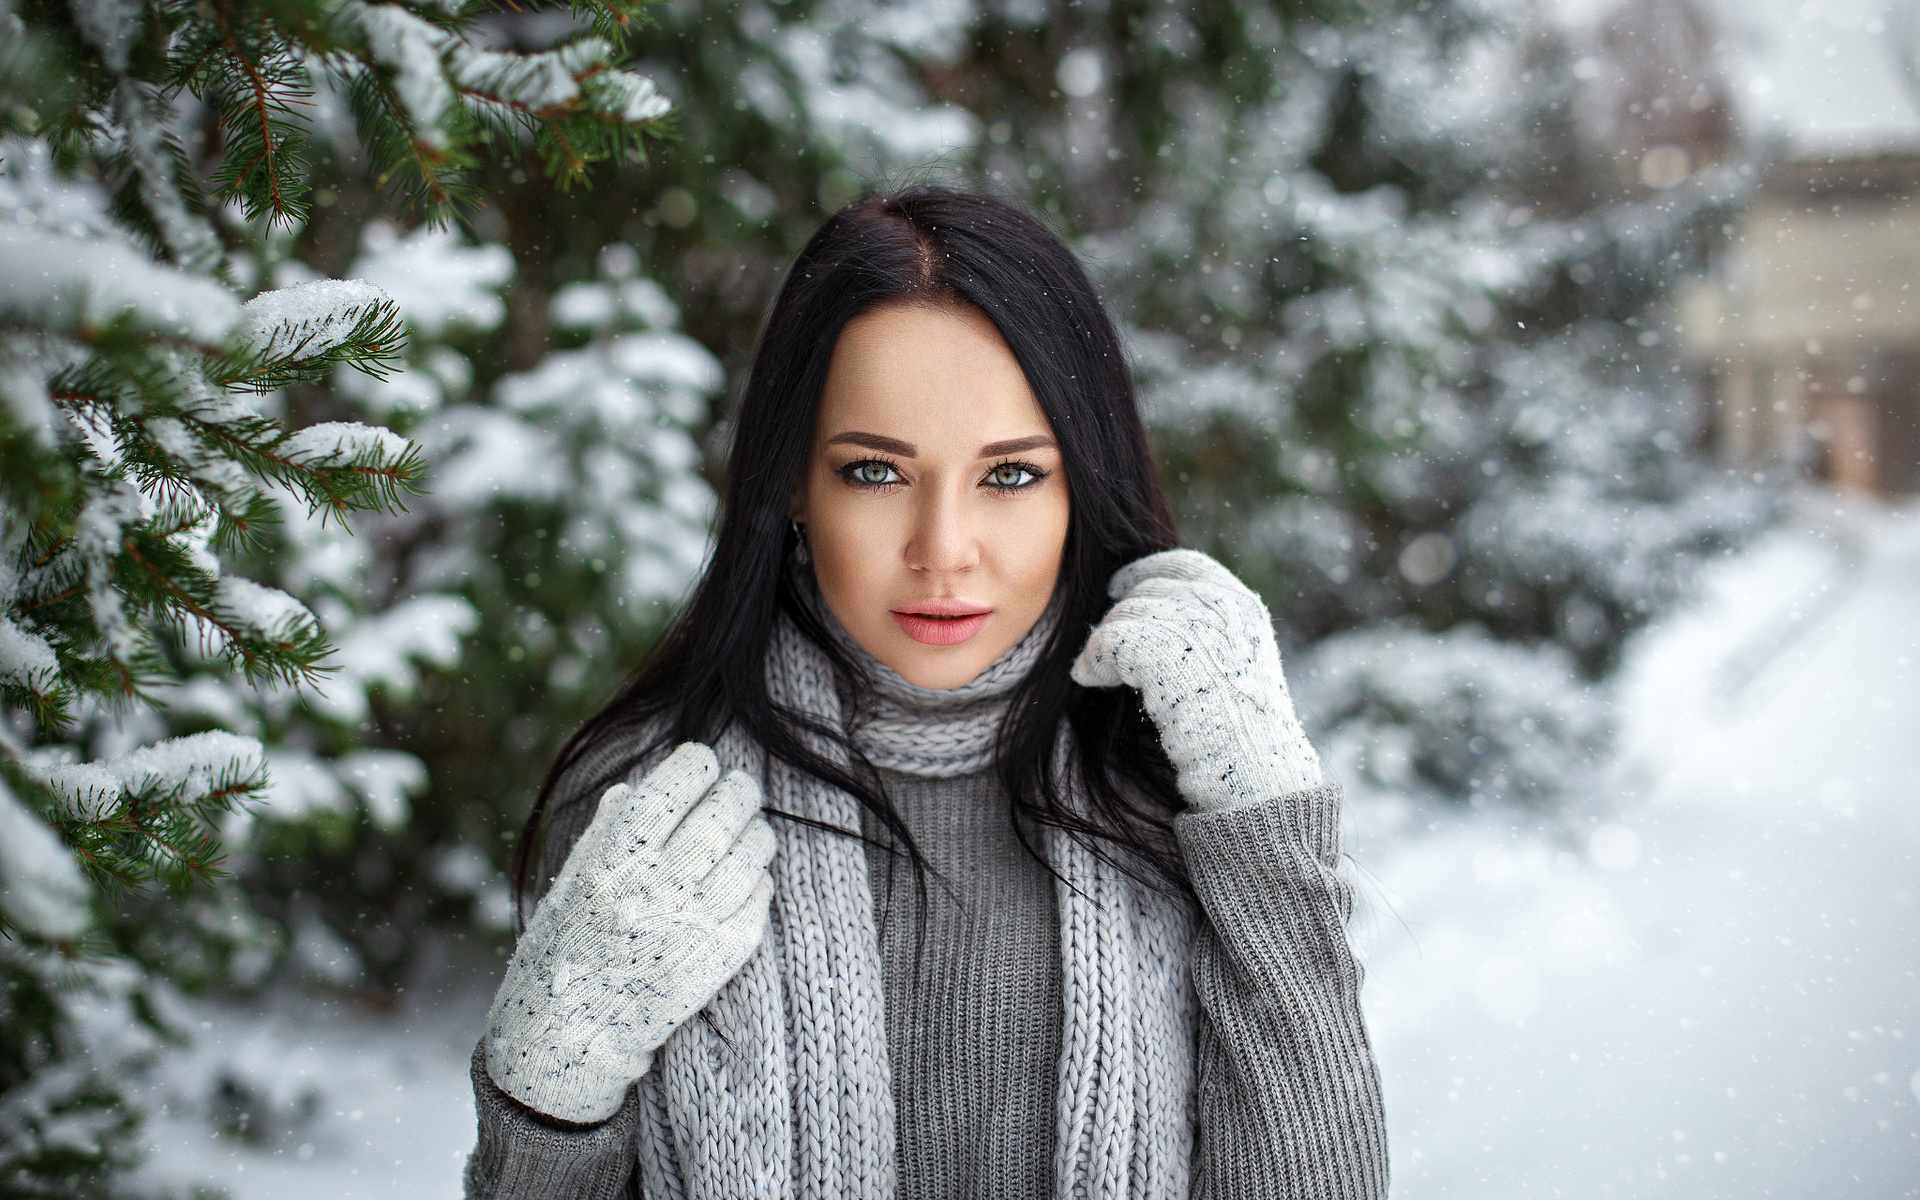 angelina petrova, women, model, gloves, snow, depth of field, black hair, sweater, women outdoors, portrait